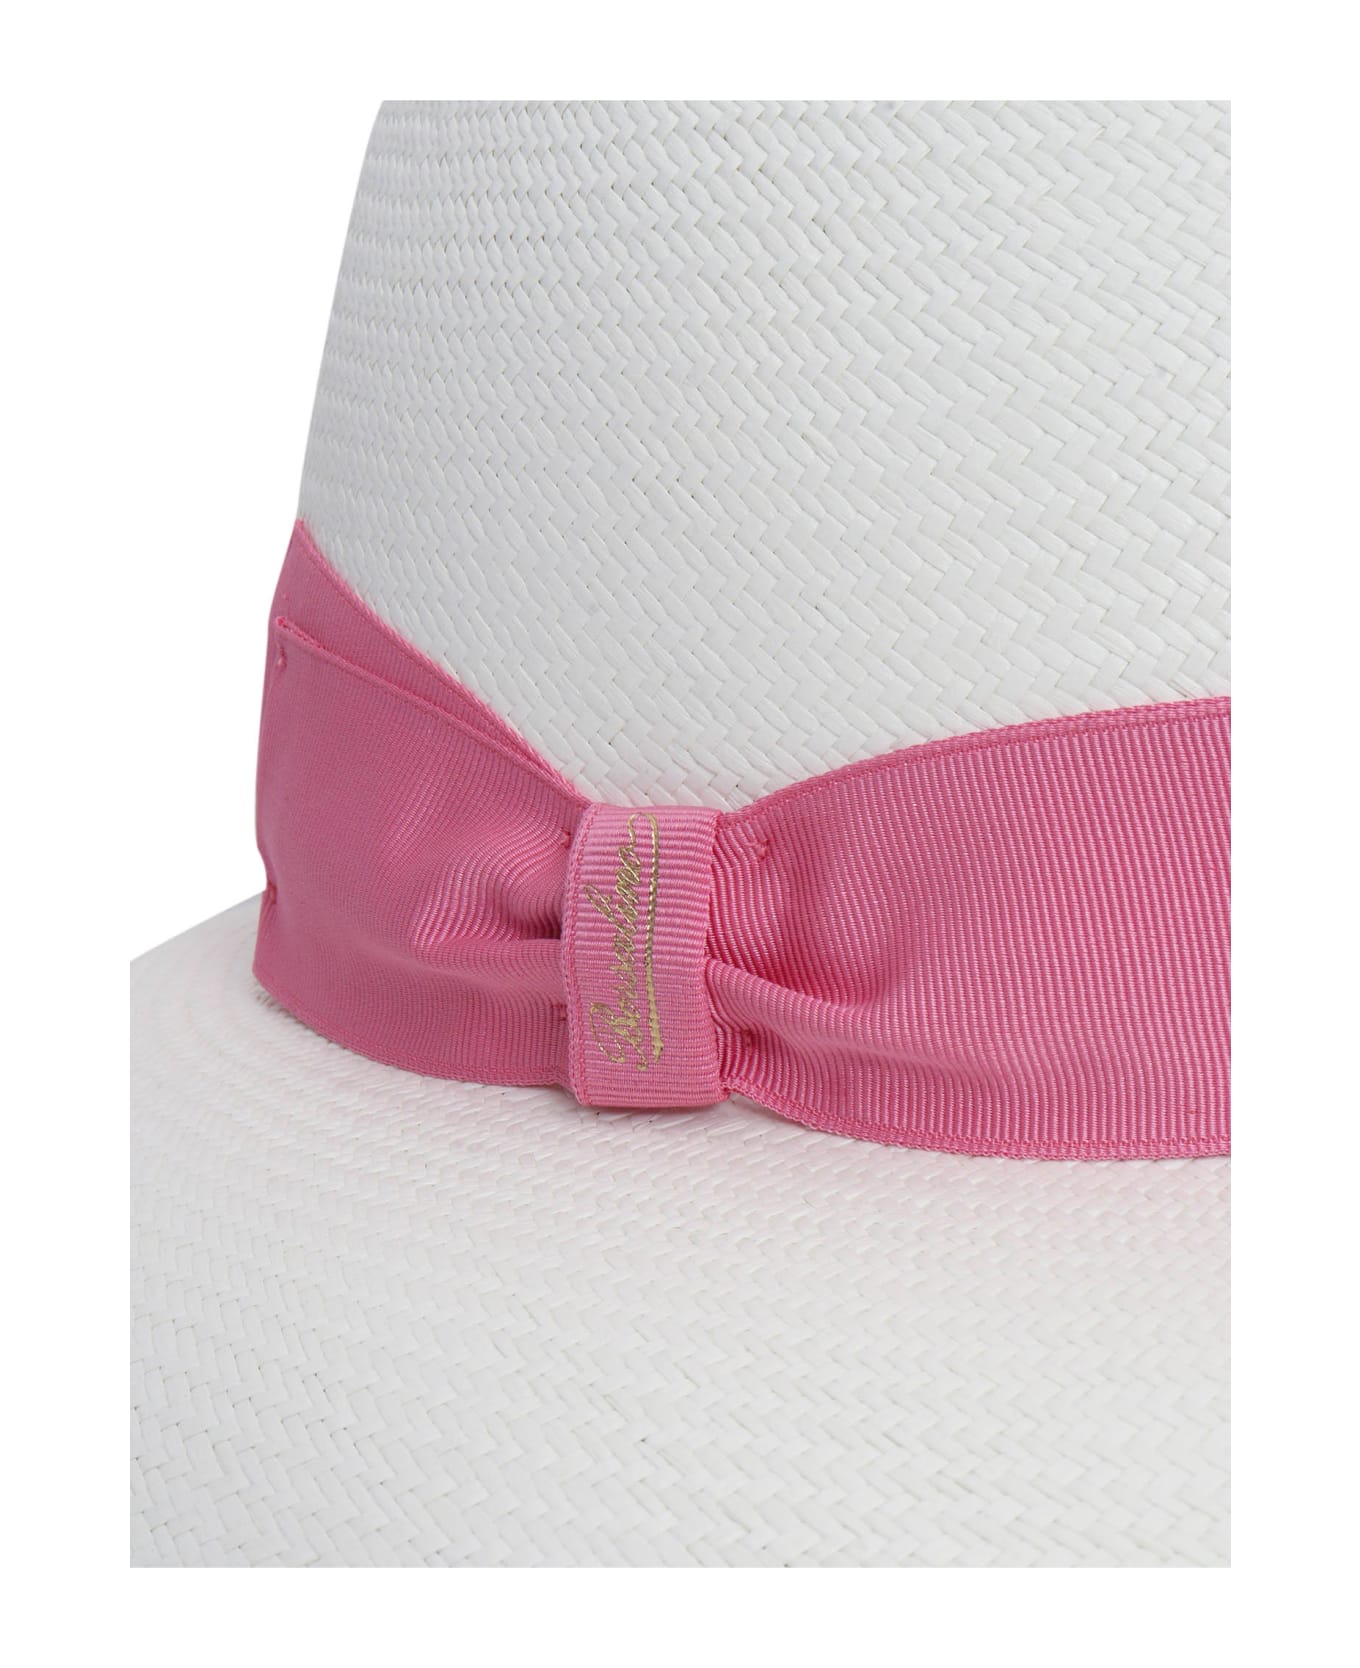 Borsalino Claudette Fine Wide Brim Panama Hat - WHITE